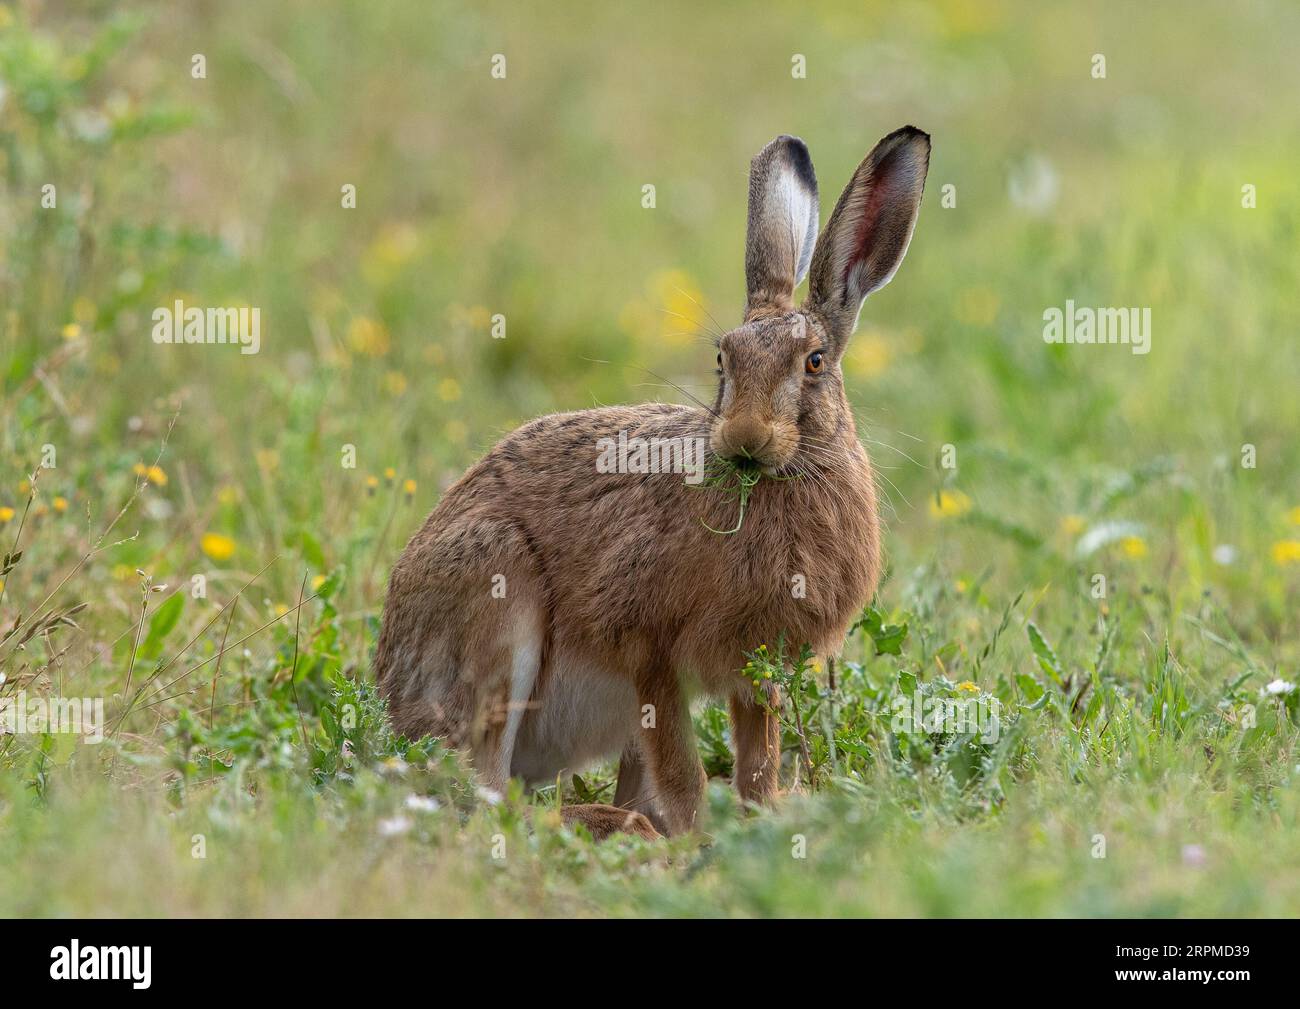 Una grande e sana Lepre bruna seduta sgranocchiata sul margine del campo, che mostra i dettagli del suo occhio arancione, delle sue grandi orecchie e della sua pelliccia bruna chiazzata - Suffolk, UK Foto Stock